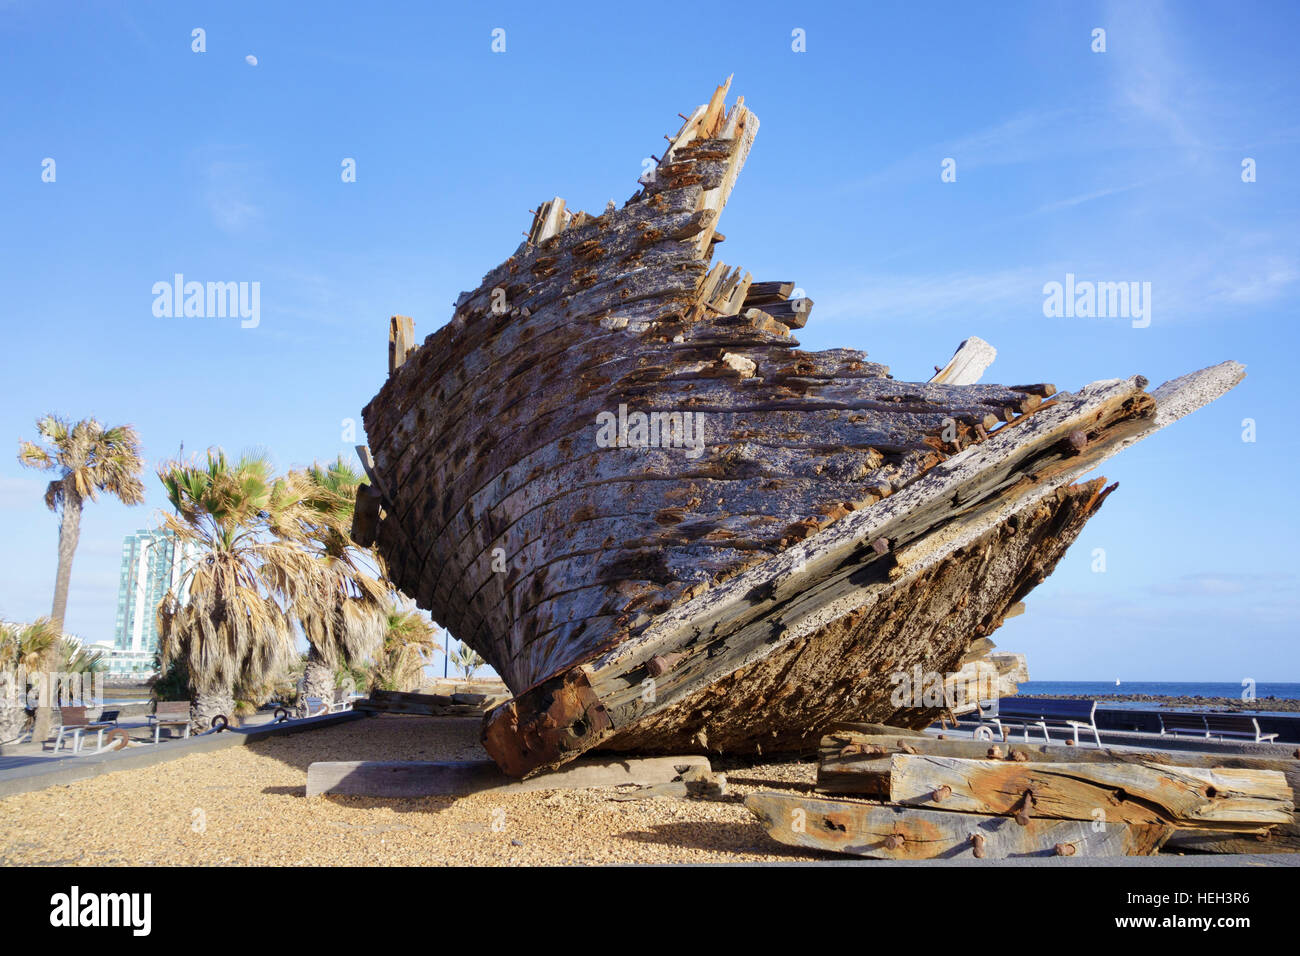 Unbenannte Skulptur von Luis Ibanez, Parque Tematico, Arrecife, Lanzarote, Kanarische Inseln, Spanien Stockfoto